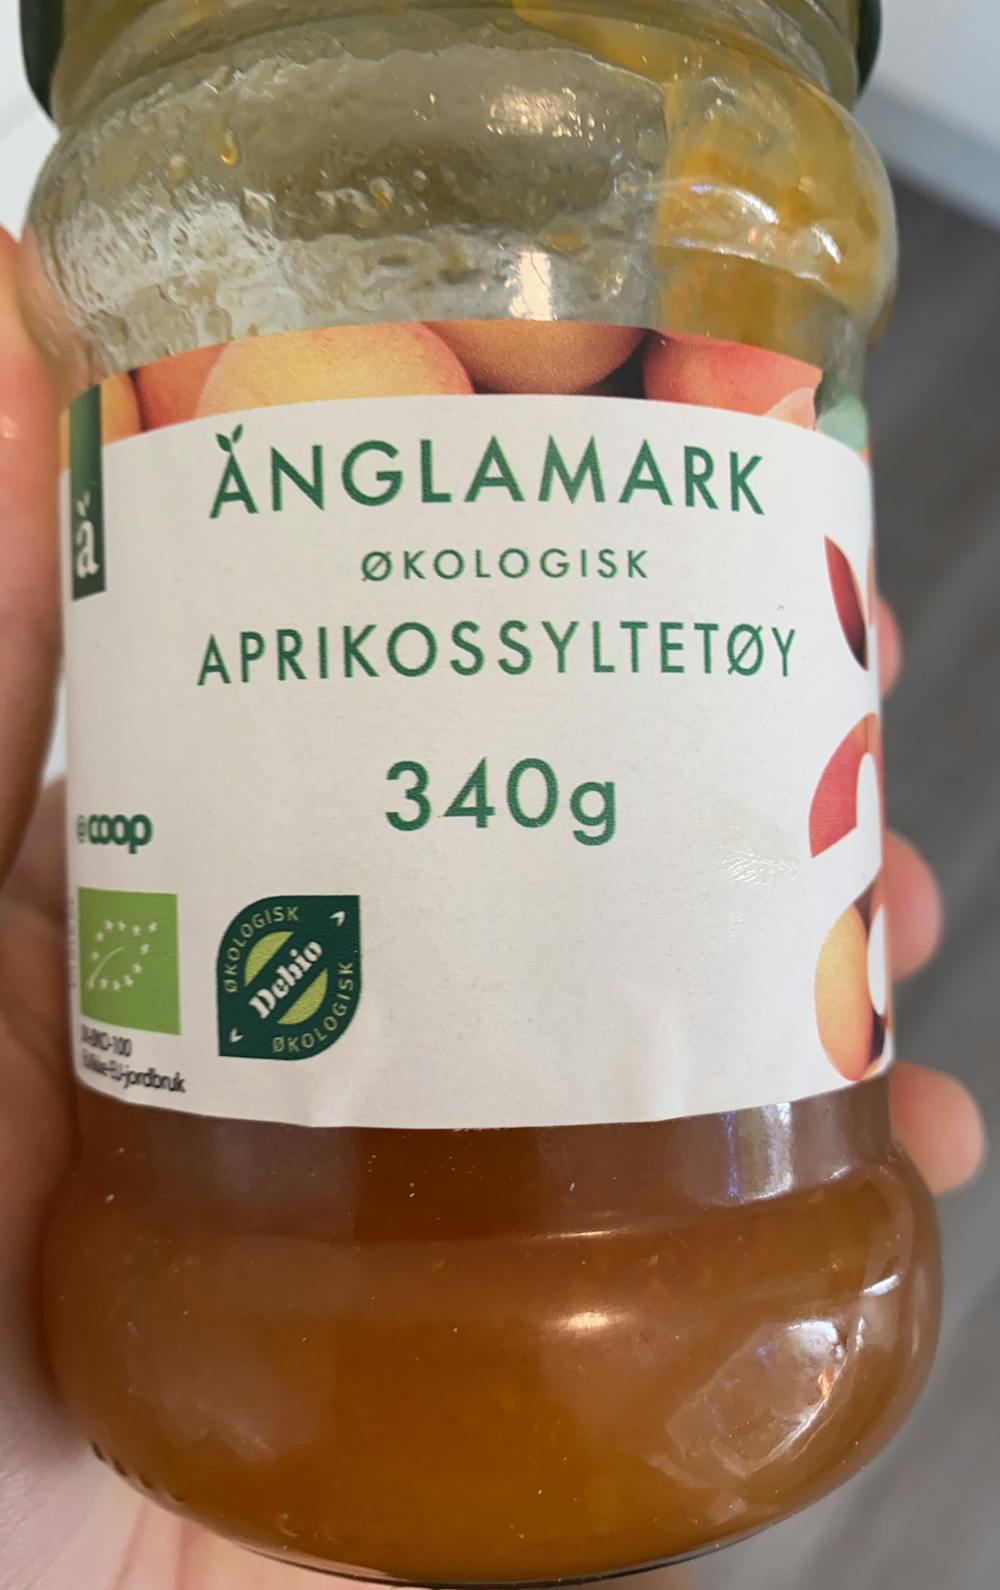 Økologisk aprikossyltetøy, Ânglamark